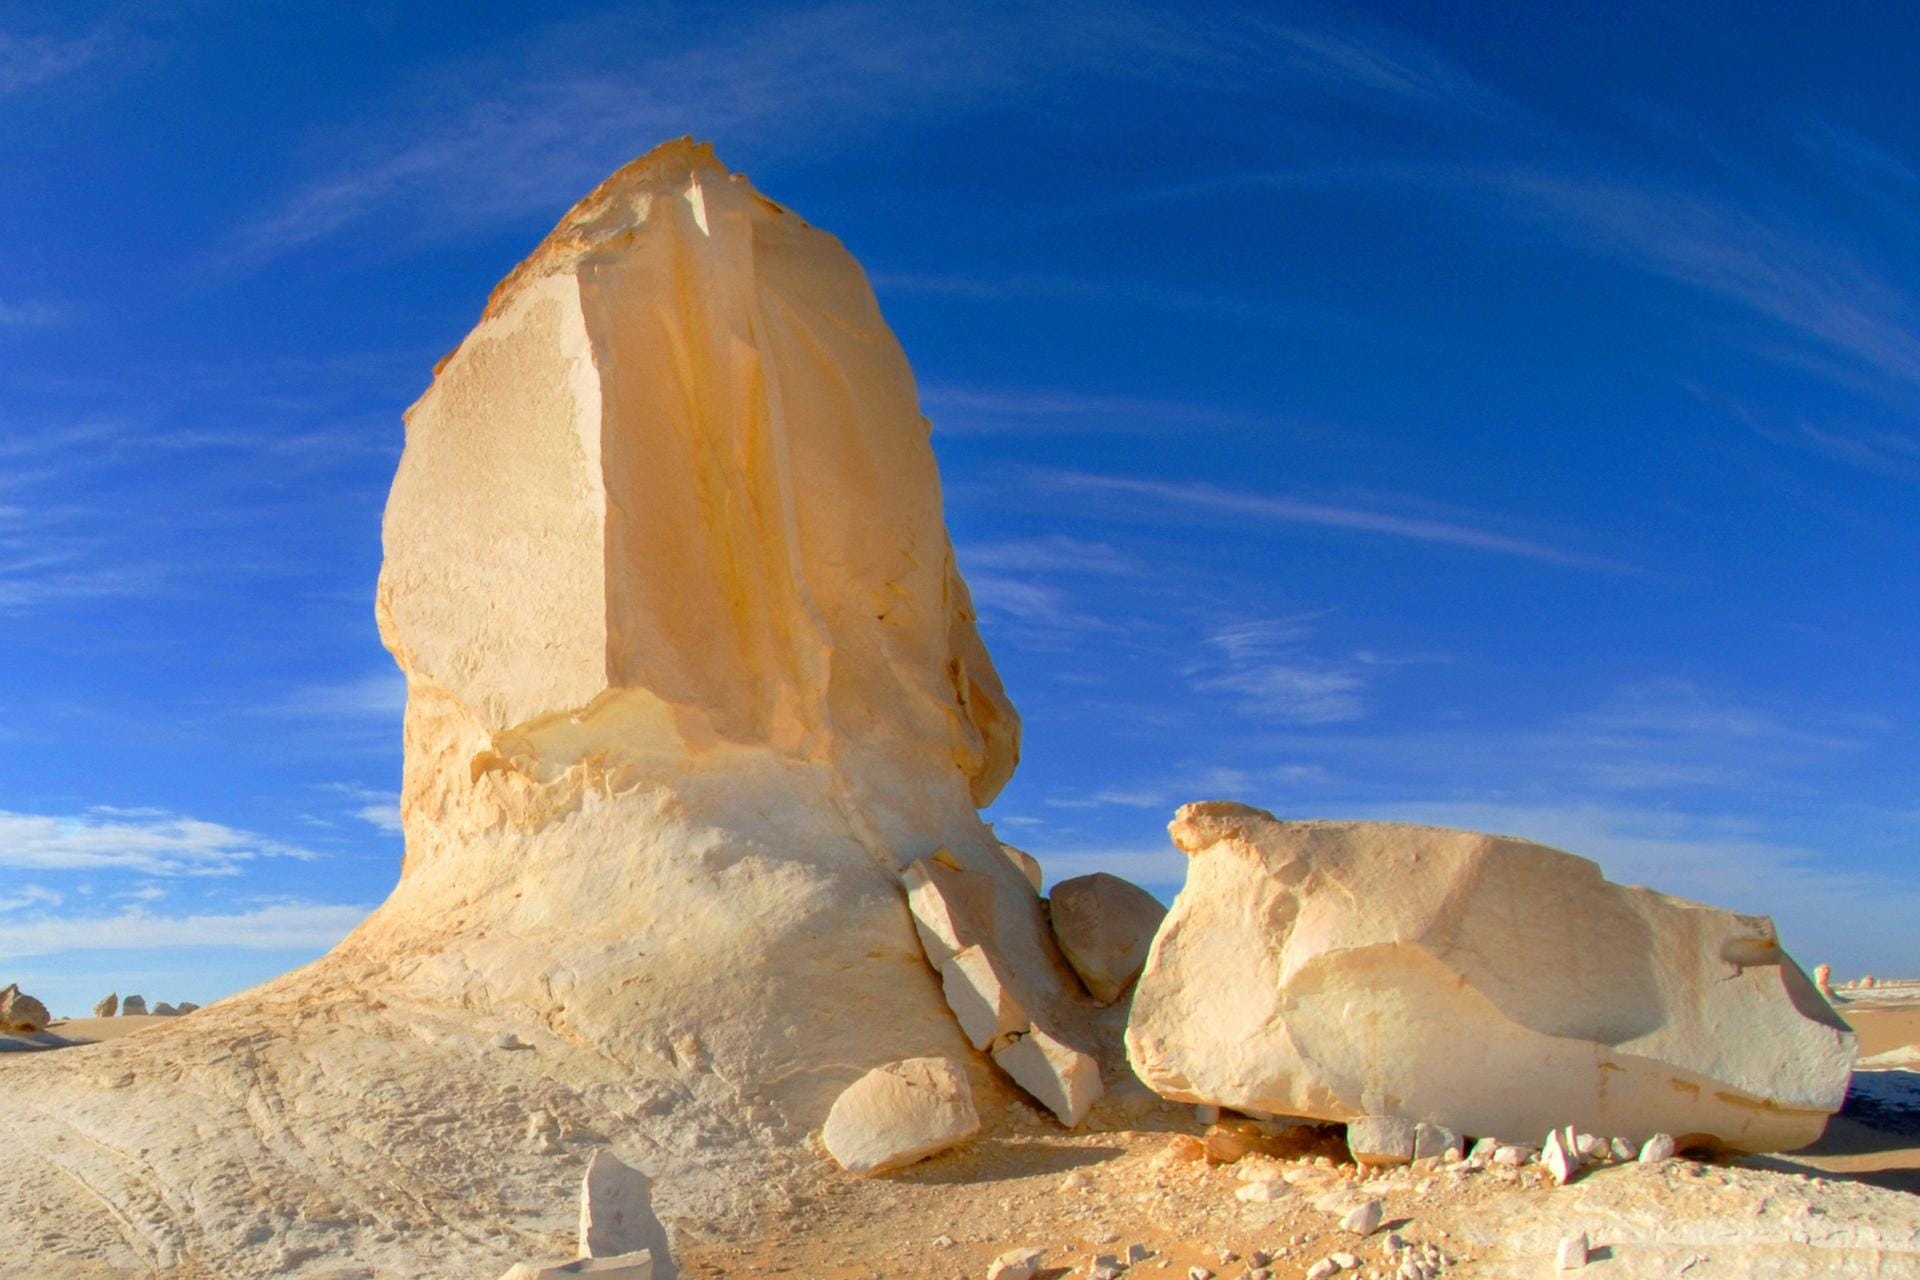 Nördlich der Oase Farafra liegt eine der beeindruckendsten Landschaften Ägyptens: die Weiße Wüste. Riesige Monolithen aus weißem Kalksandstein gaben der Wüste den Namen. Infolge der Erosion durch den Wind sind bizarre Gebilde entstanden, die die Phantasie der Betrachter beflügeln. Wegen der pilzartigen Felsformationen in einem begrenzten Areal nennen die Einheimischen dieses auch Pilz-Tal ("Mushroom Valley").